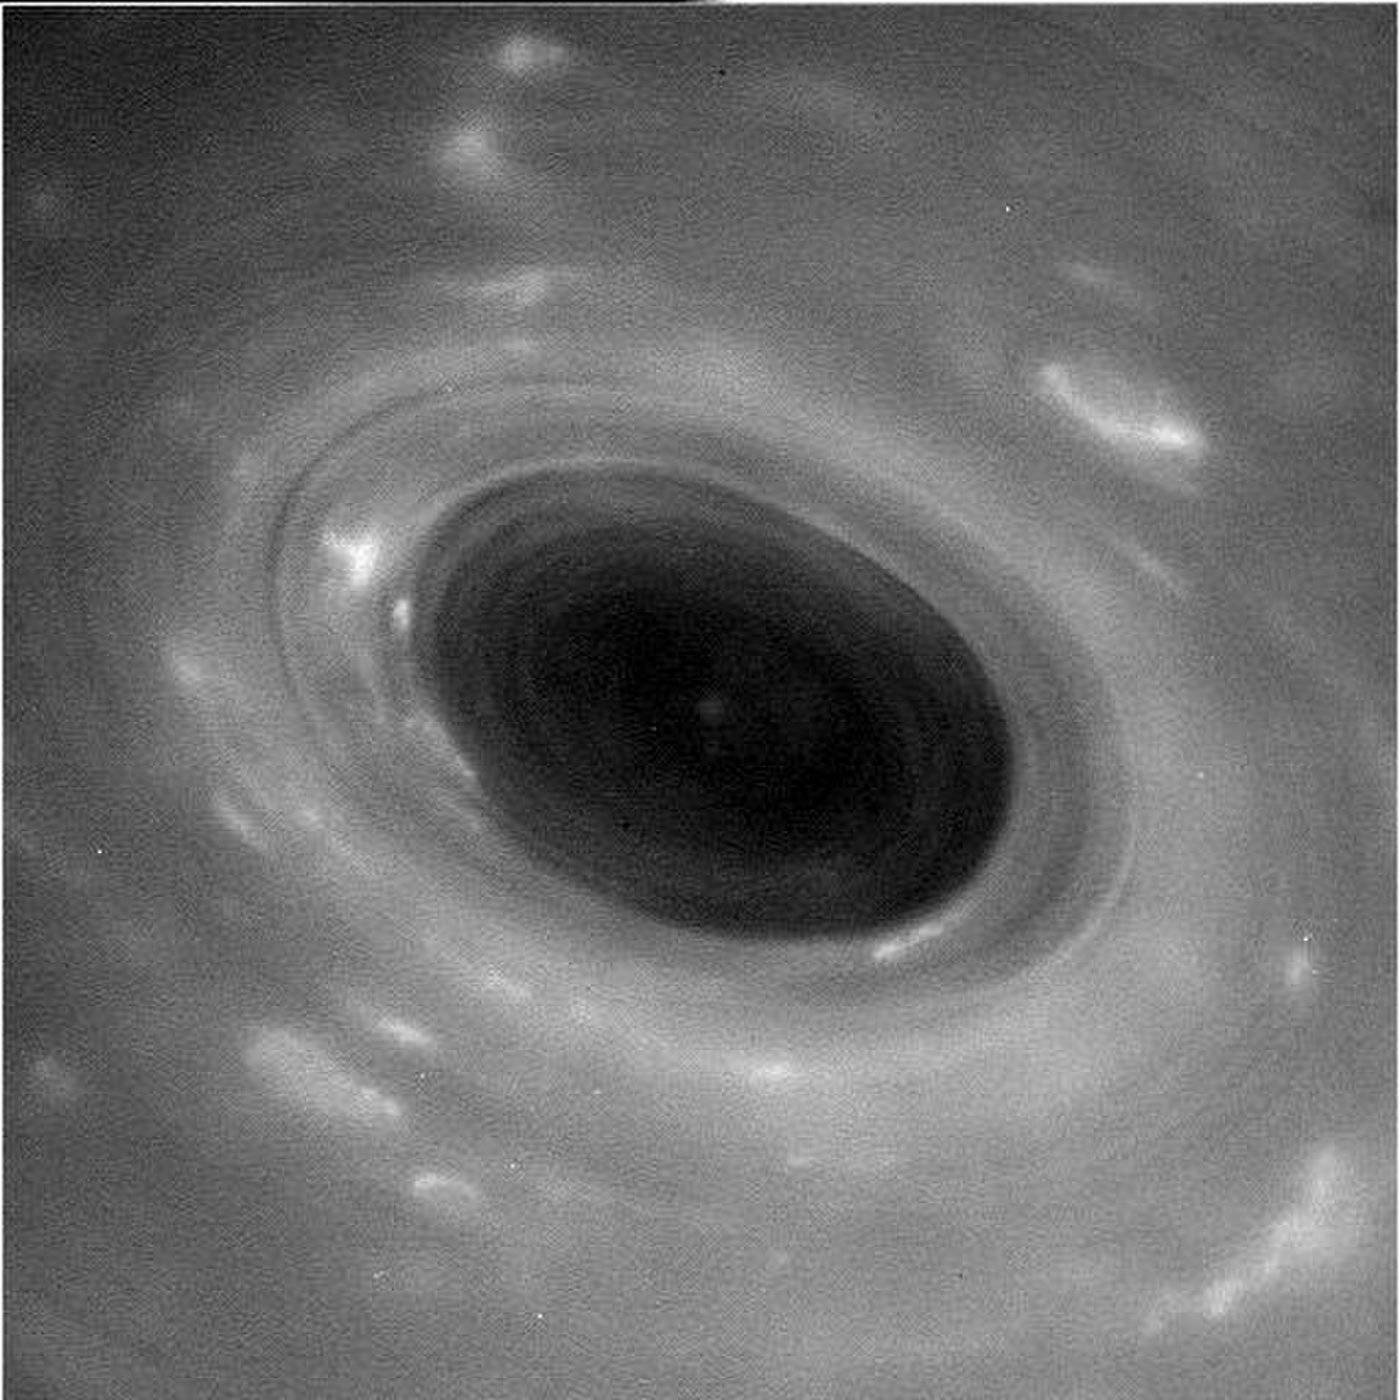 "Касини" ни изпрати внушителни кадри от ураган на Сатурн